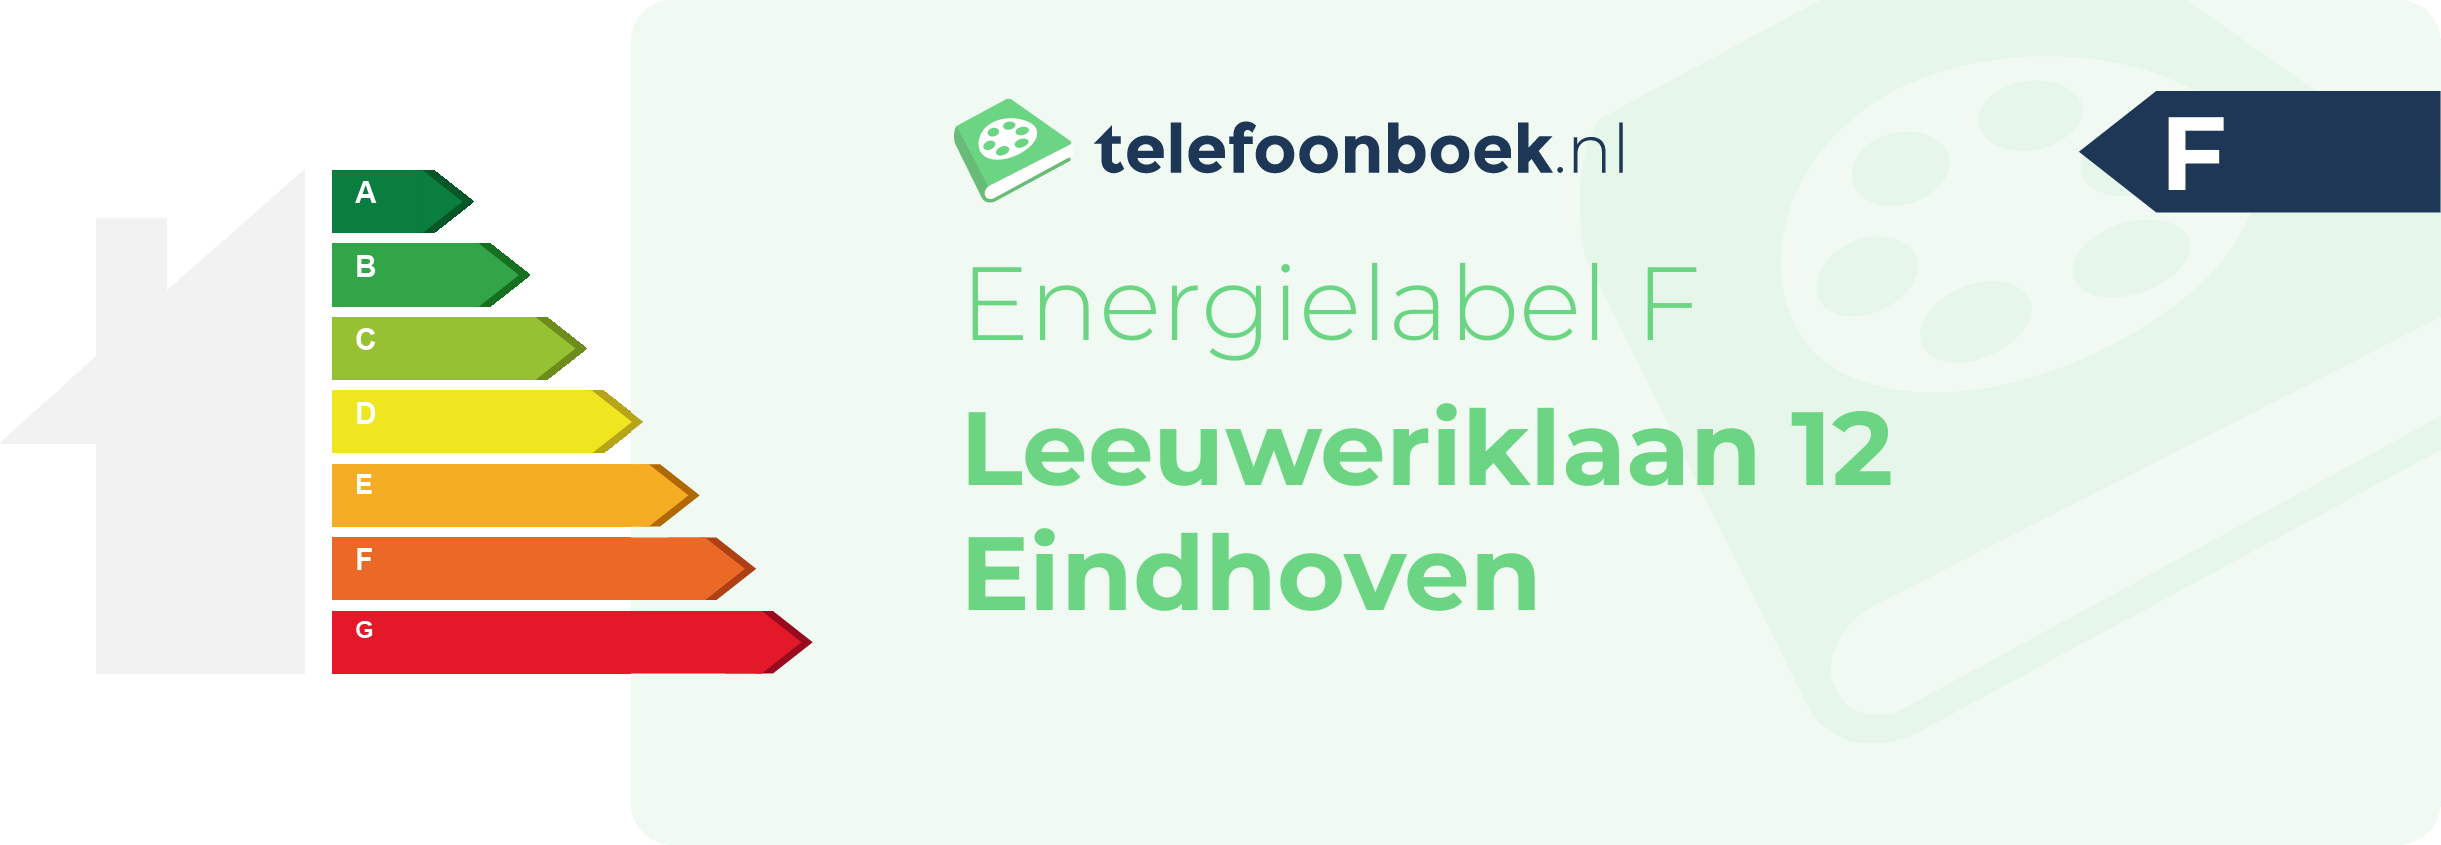 Energielabel Leeuweriklaan 12 Eindhoven